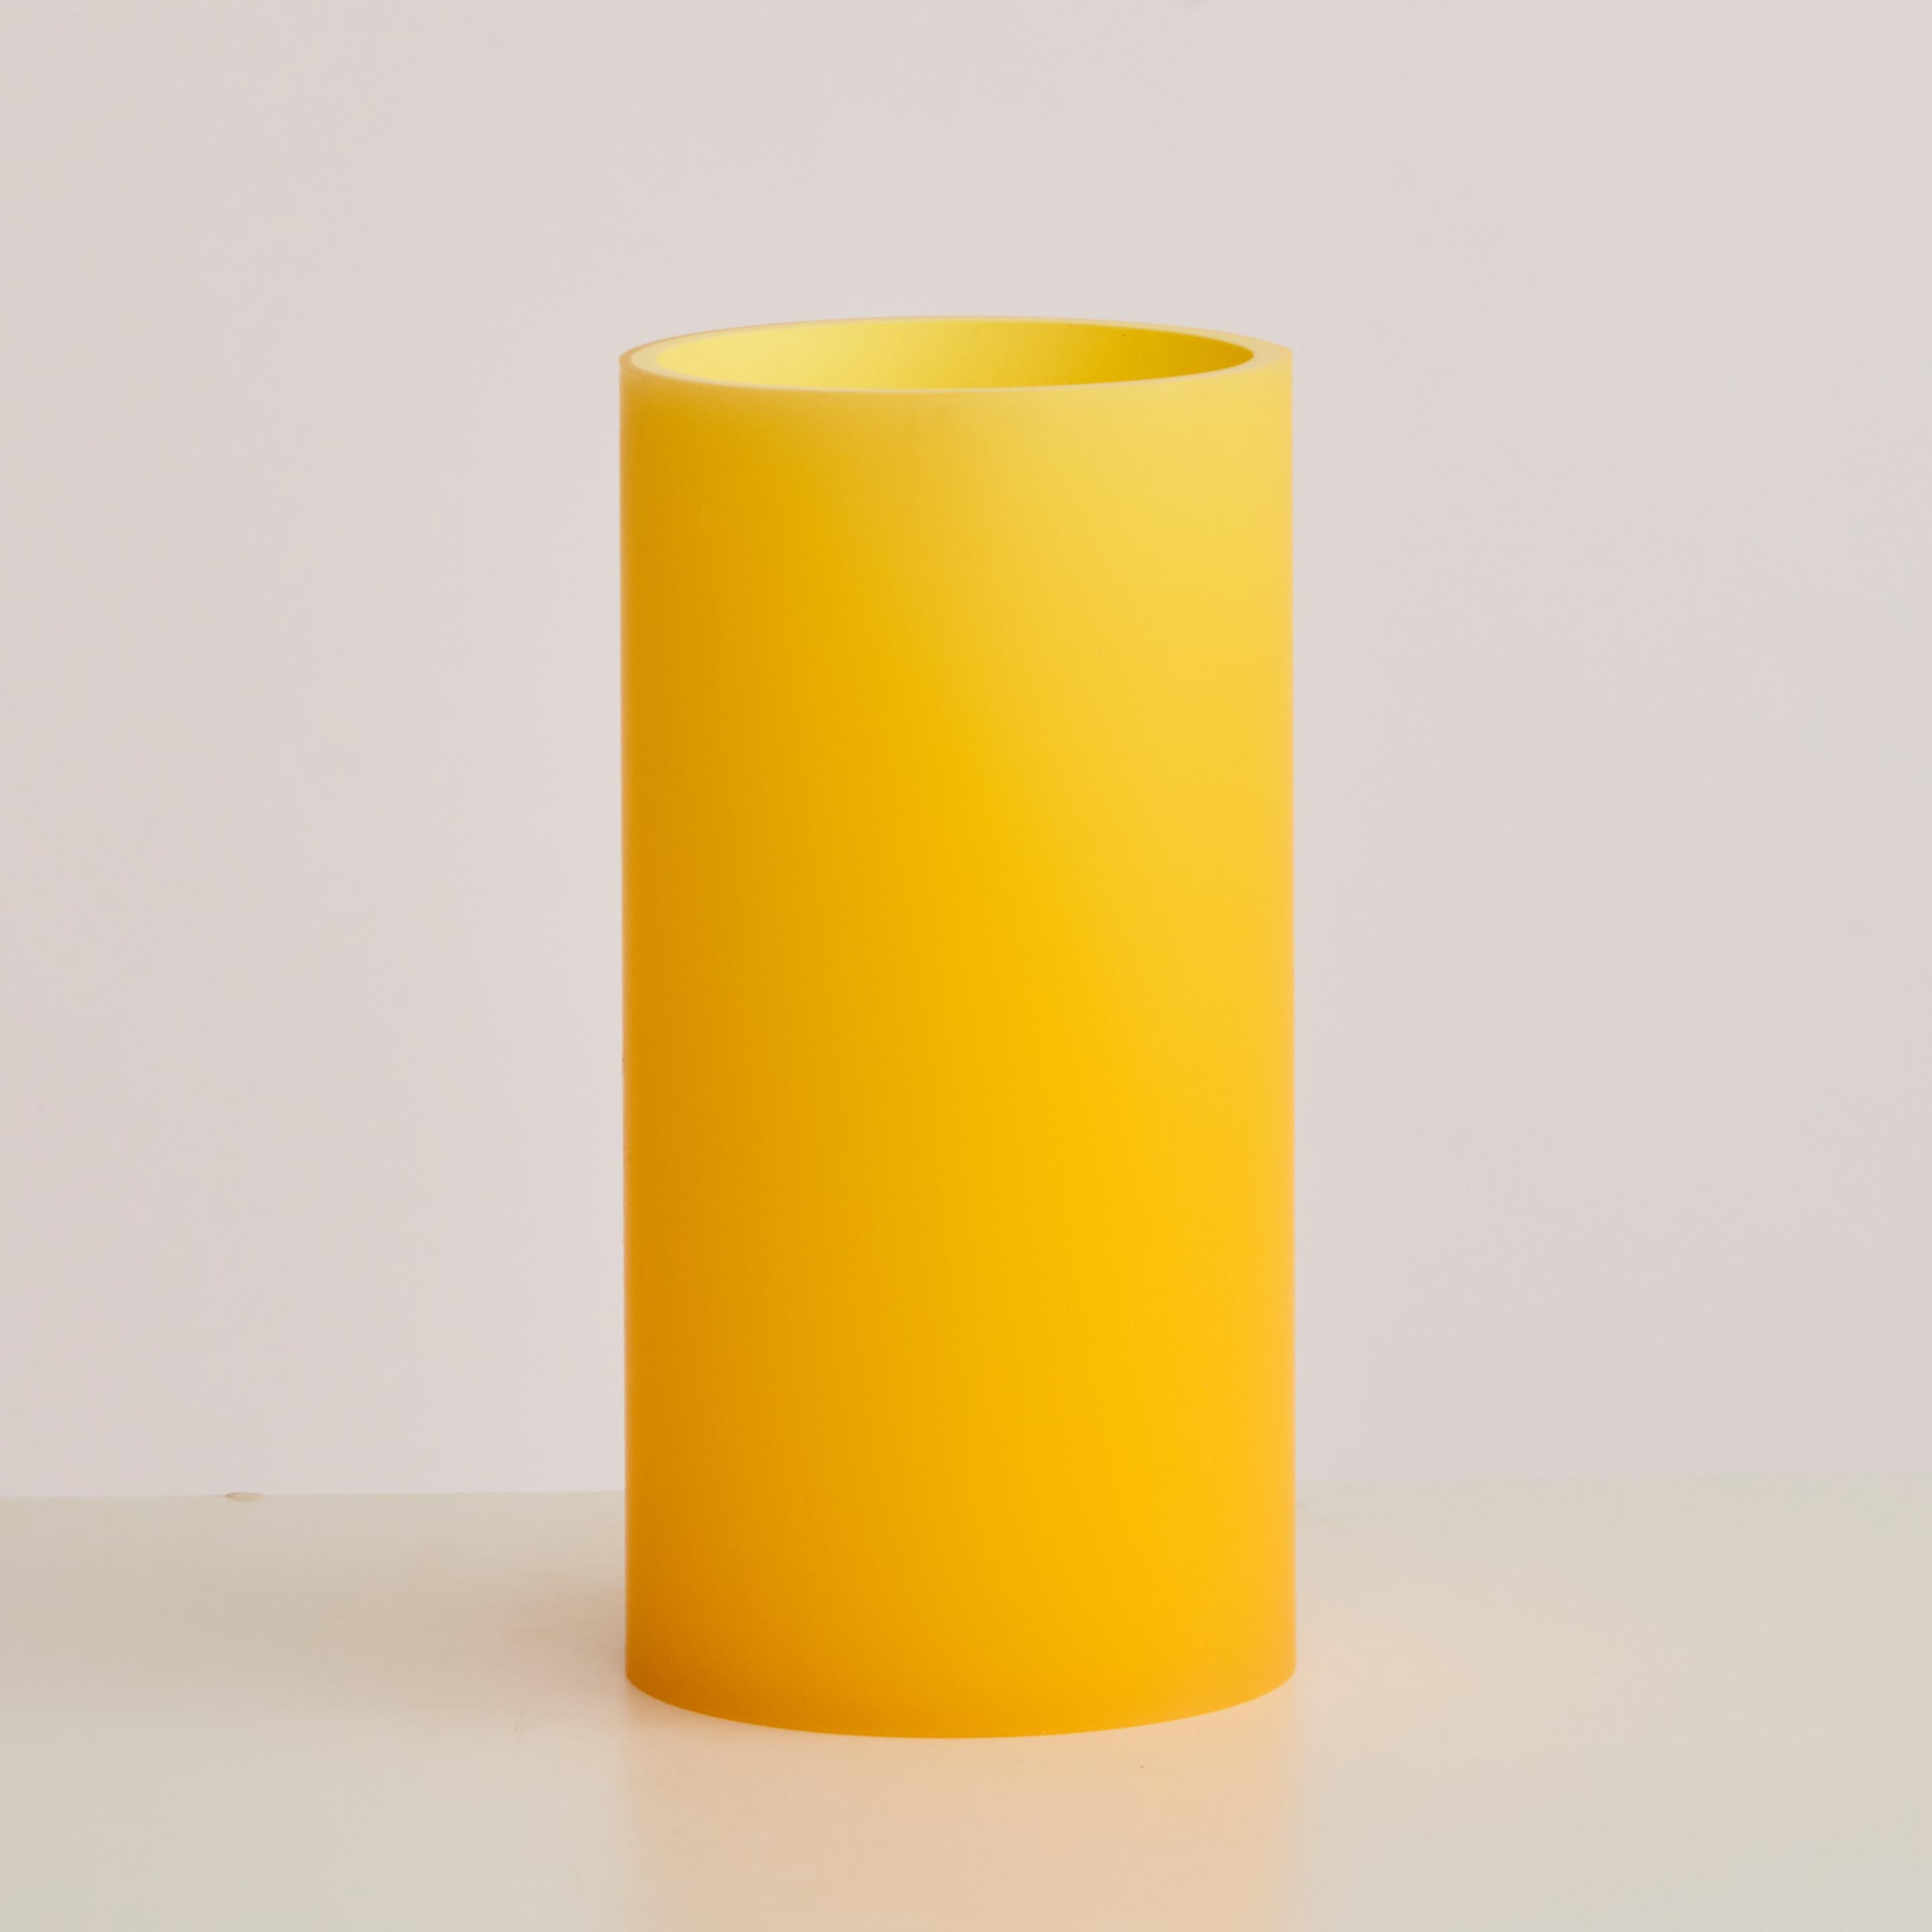 Zylindervase aus Harz in Orange und Gelb. Mit einem leuchtenden Äußeren, dessen Farben sich im pfirsichfarbenen Farbspektrum mischen, und einem rosafarbenen Inneren darunter.

Der Artikel ist zur sofortigen Lieferung verfügbar.